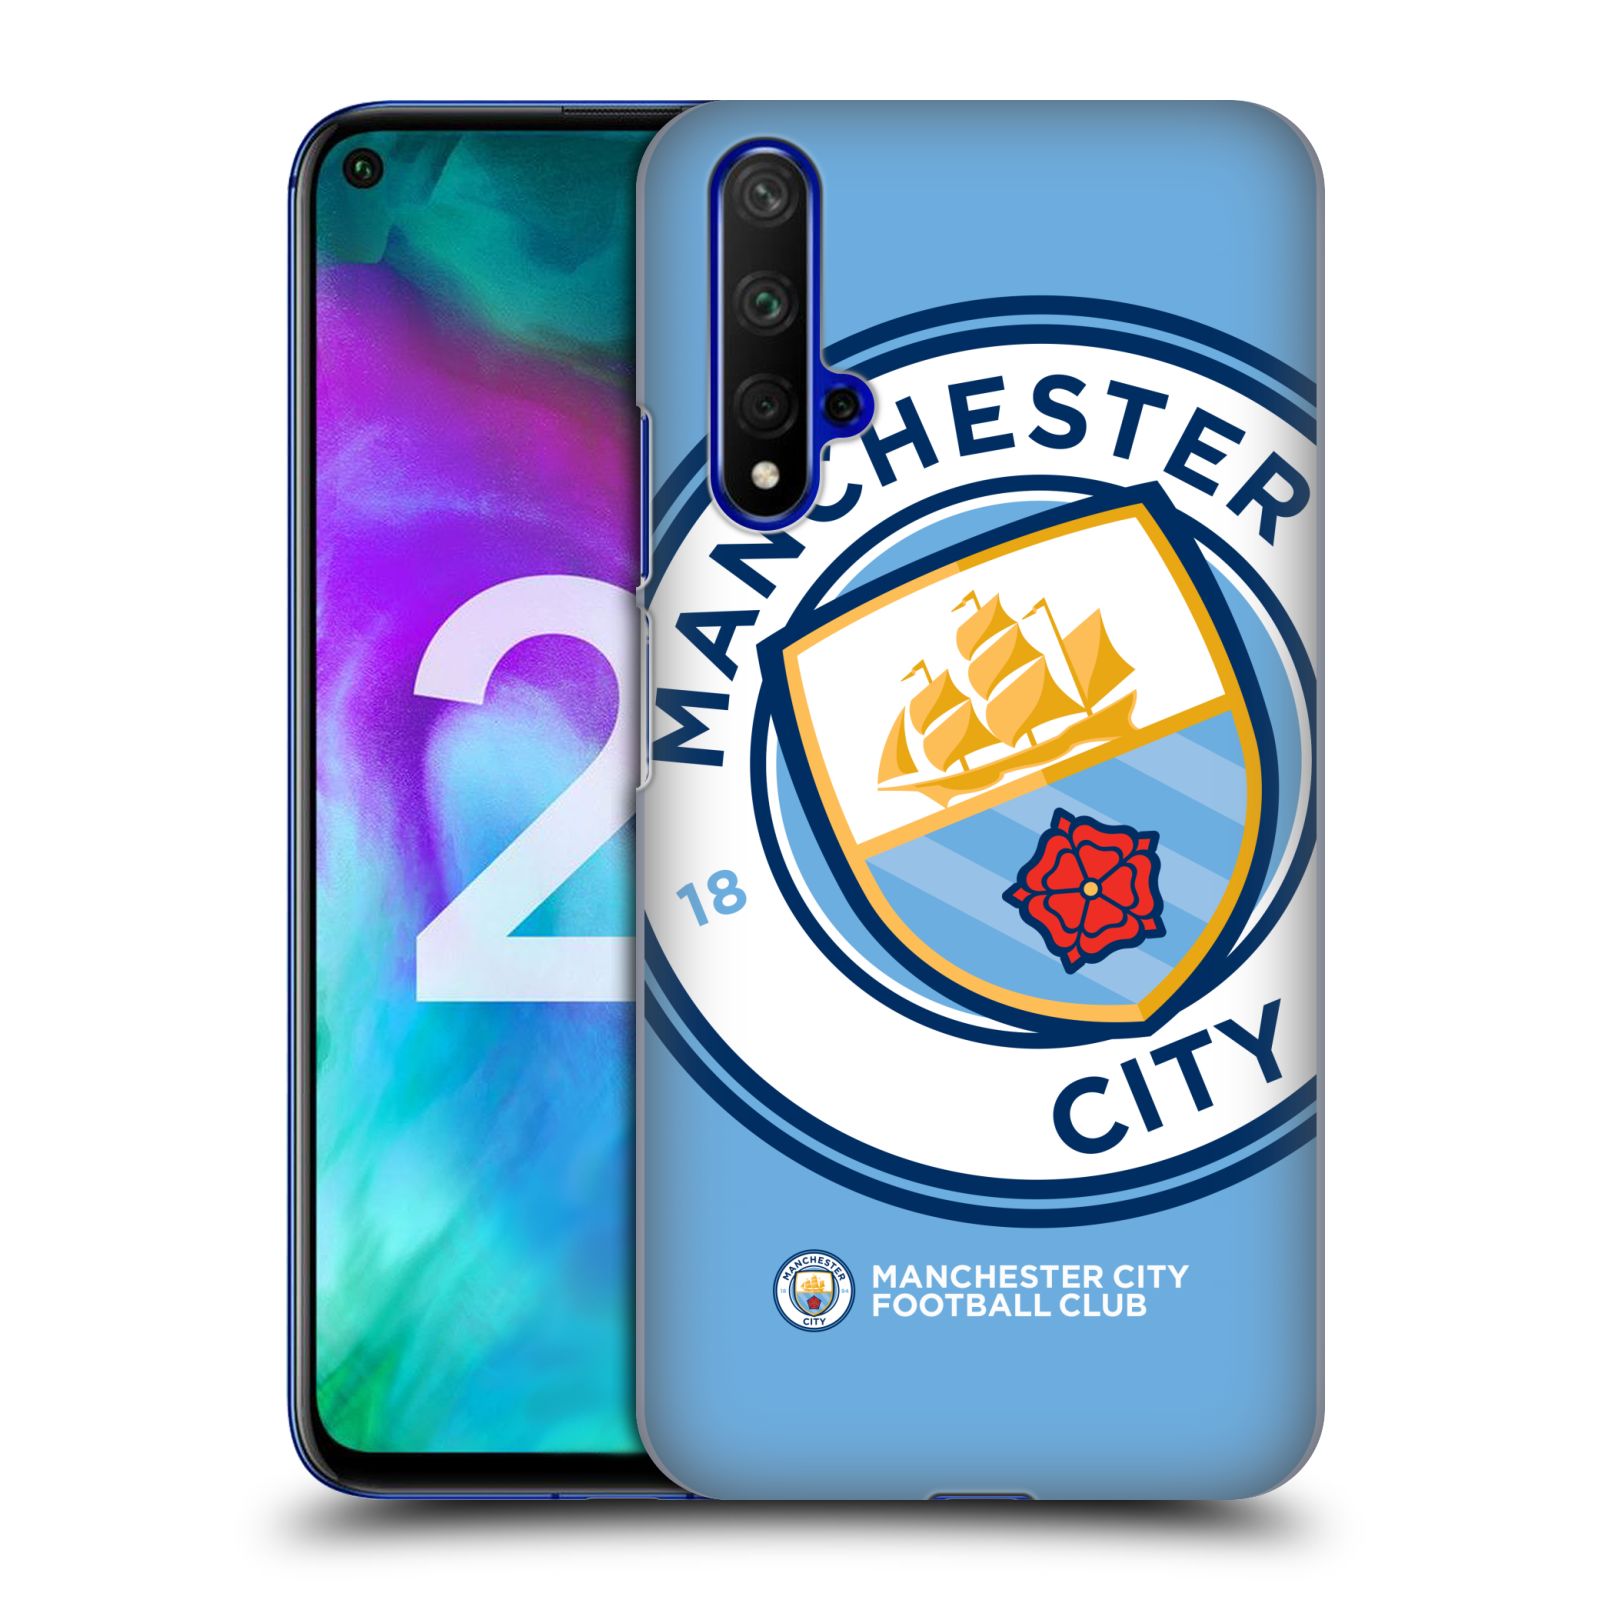 Pouzdro na mobil Honor 20 - HEAD CASE - Fotbalový klub Manchester City modrý velký přesahující znak